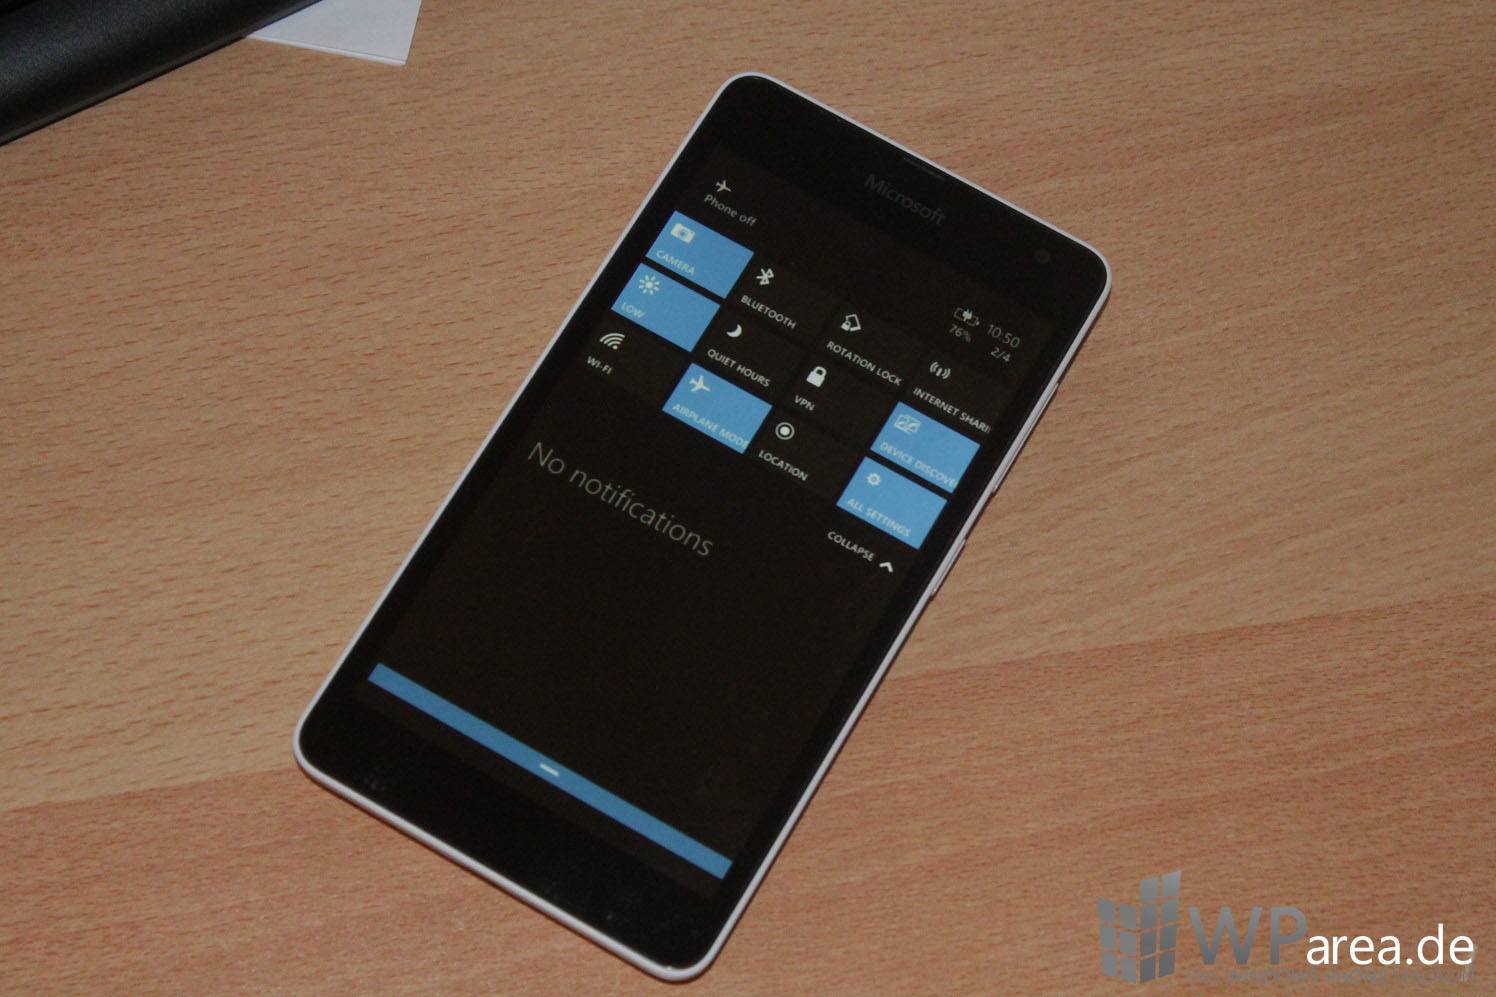 Windows 10 für Smartphones: Screenshots der Vorschauversion aufgetaucht